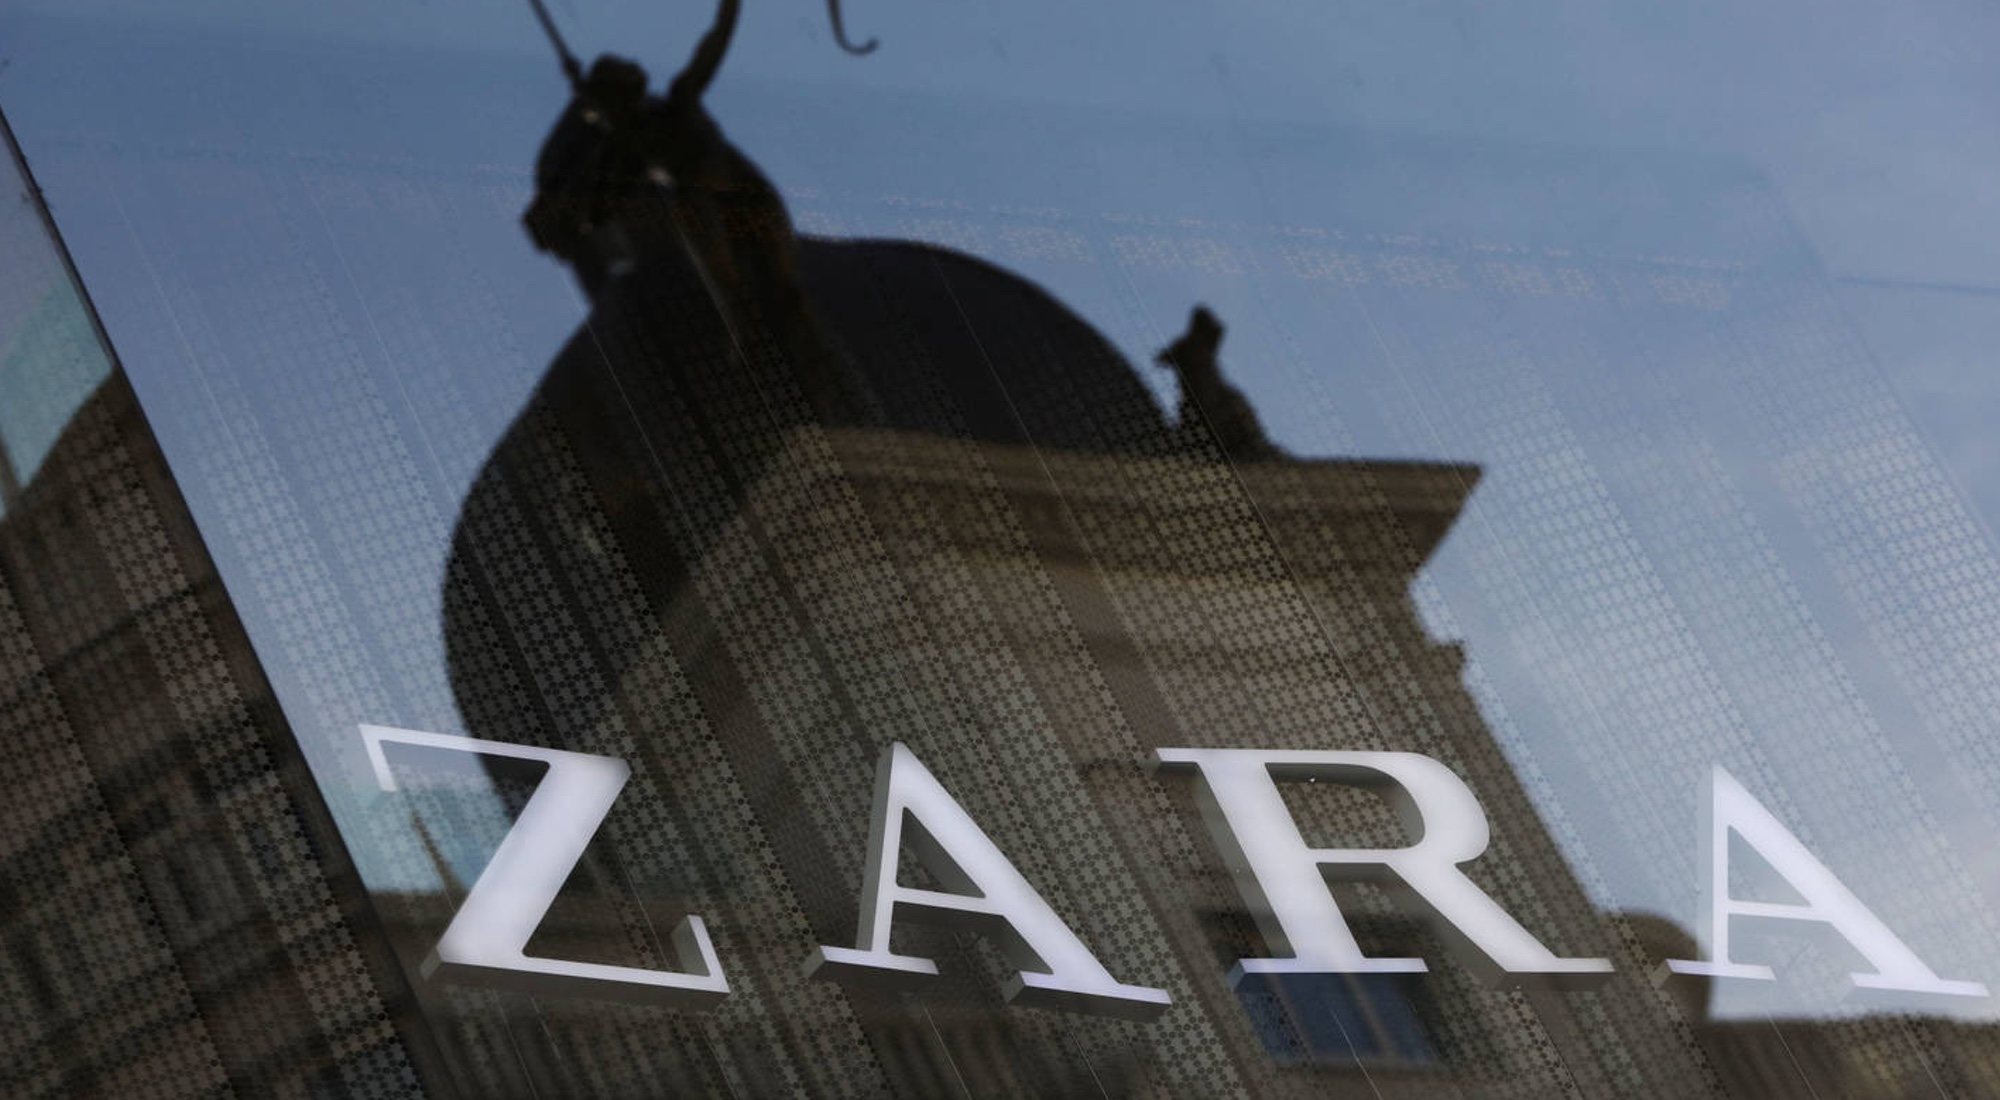 Zara es la marca insignia de la empresa creada por Amancio Ortega, Inditex